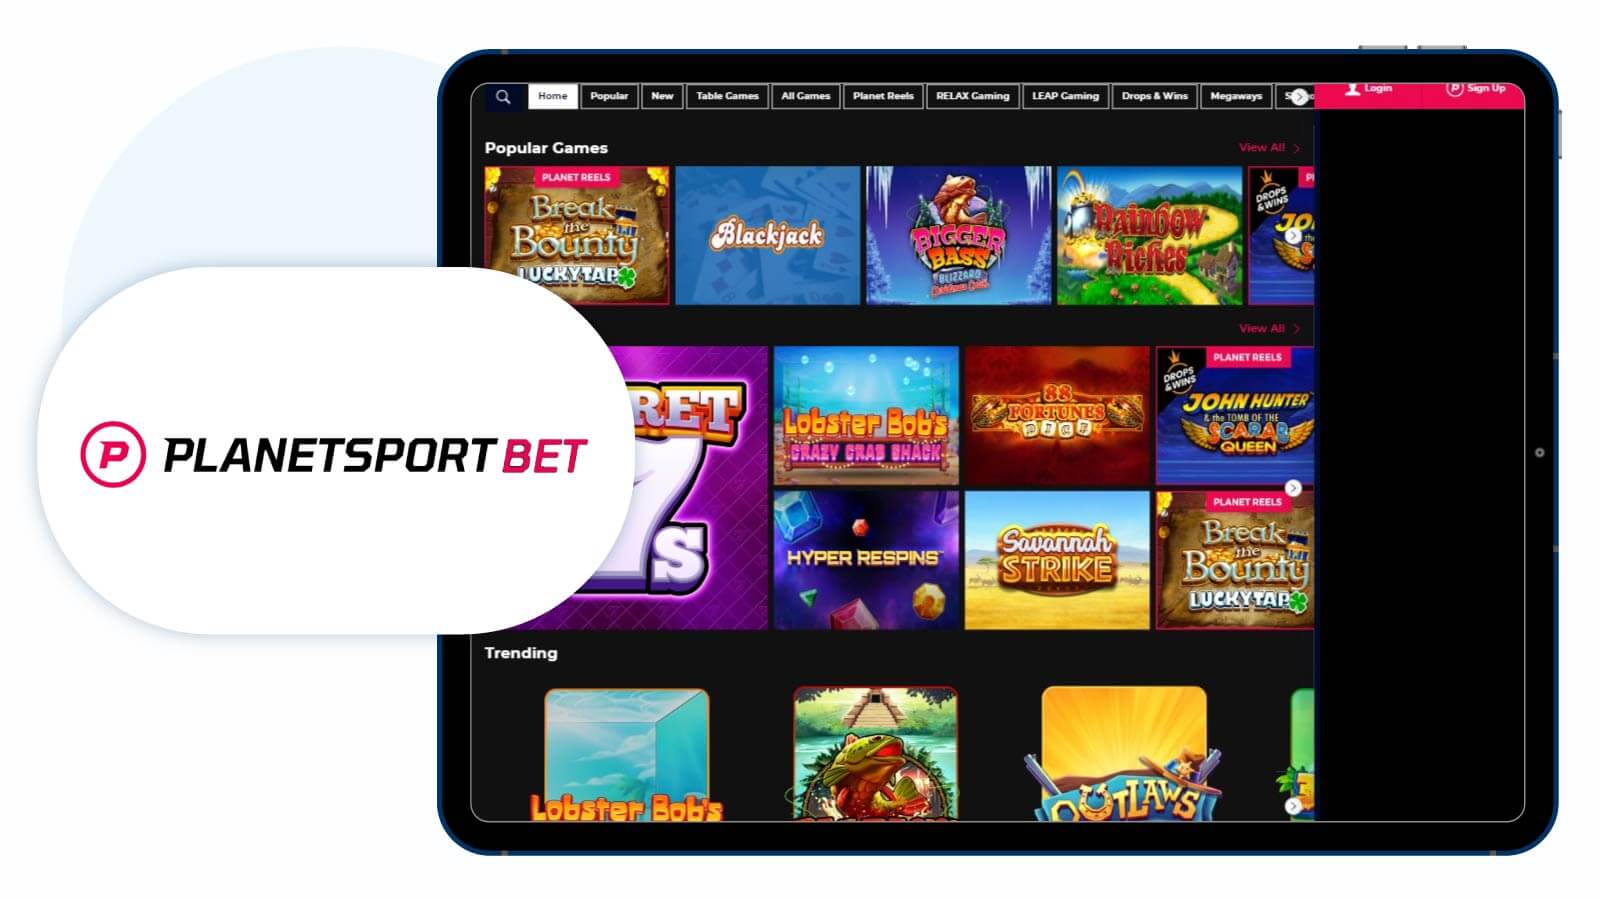 PlanetSportBet - Best NetEnt Casino for Starburst